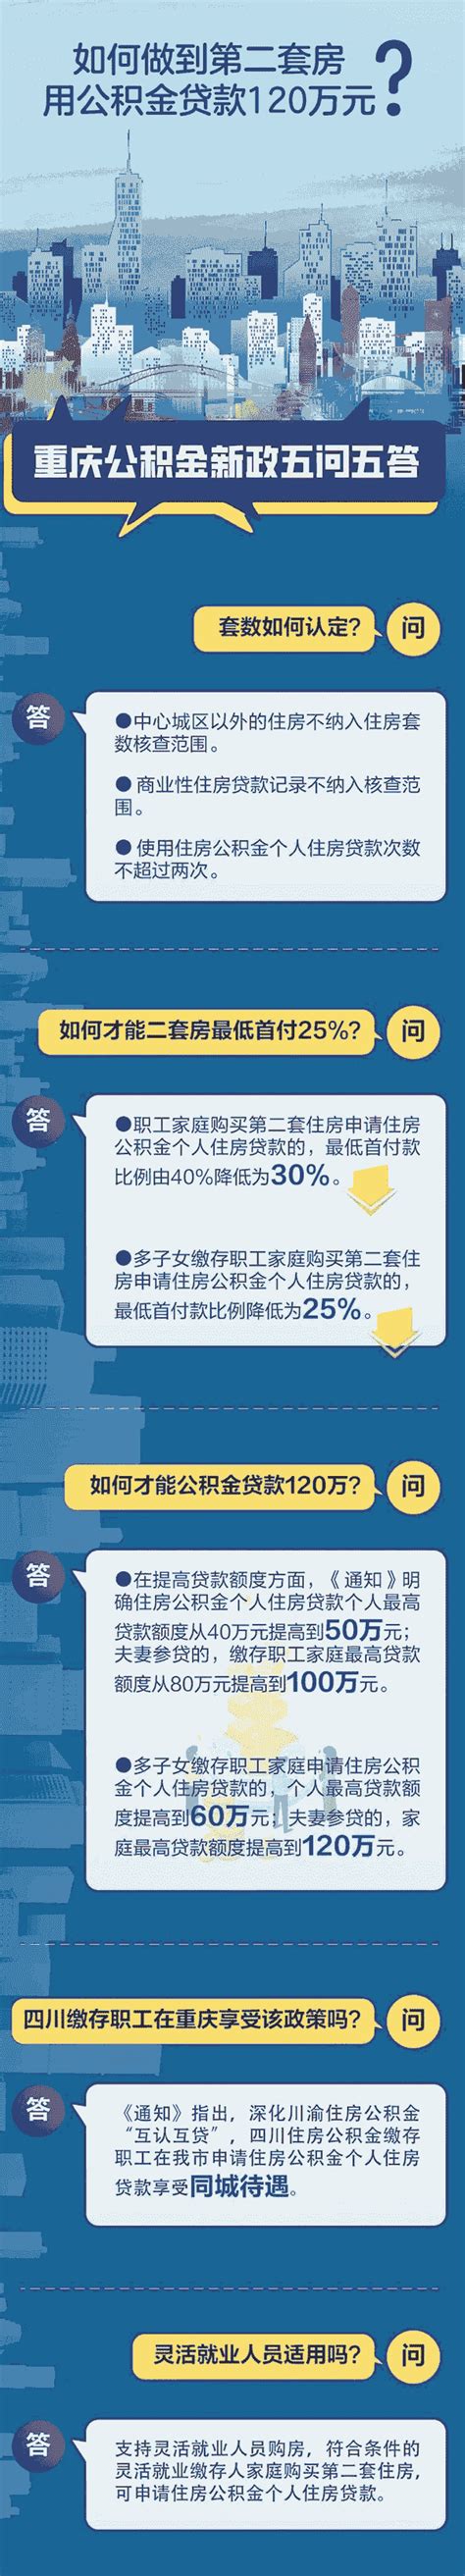 重庆发放政策担保贷款突破百亿-赣州金融网